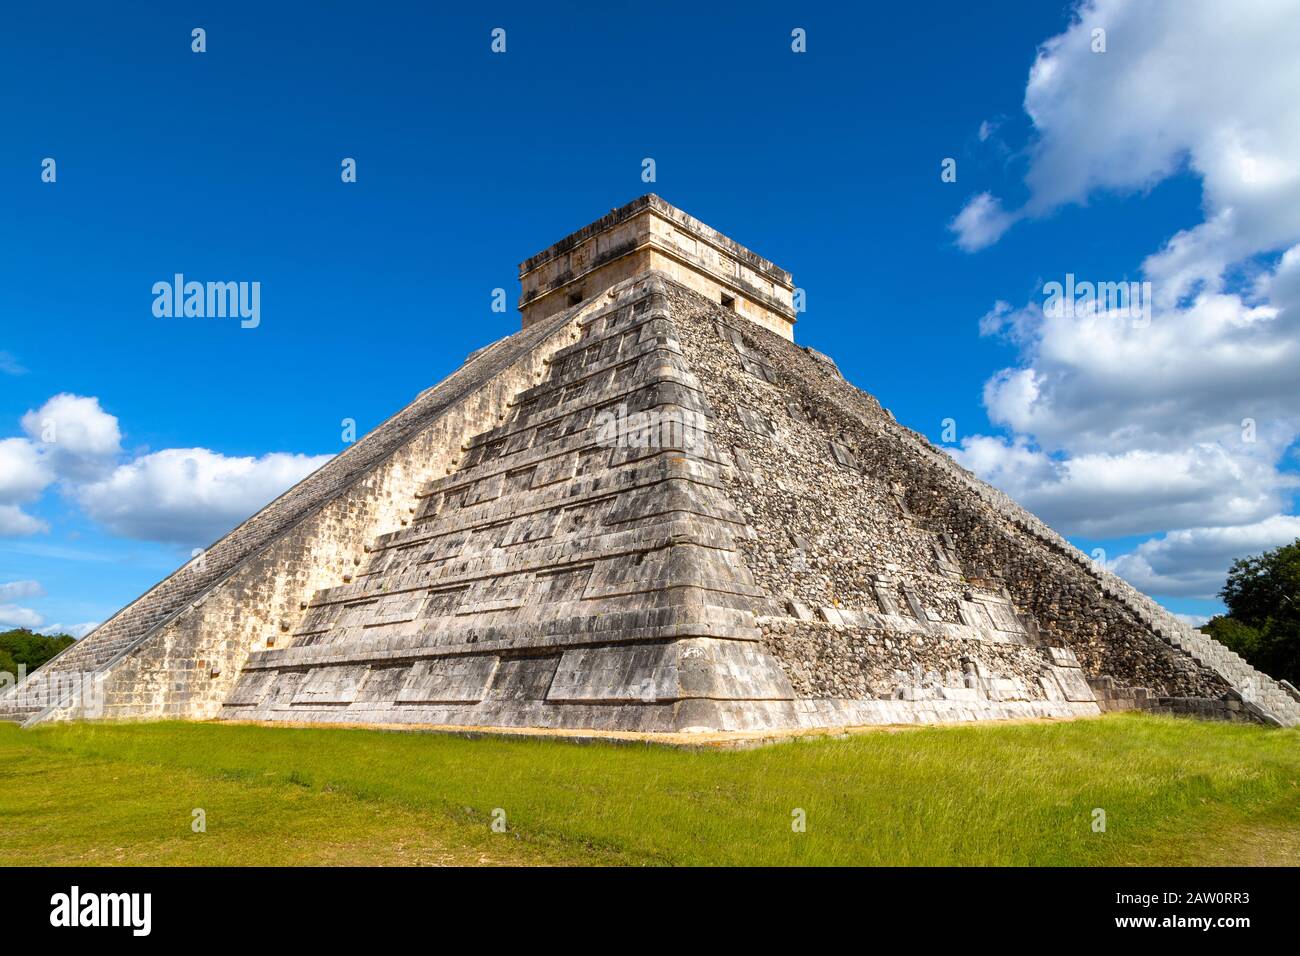 Der jahrhundertealte Tempel von Kukulkan in Chichen Itza, einer der größten Städte der Maya, die von Archäologen in Mexiko entdeckt wurden. Auch bekannt als El Castillo oder Stockfoto